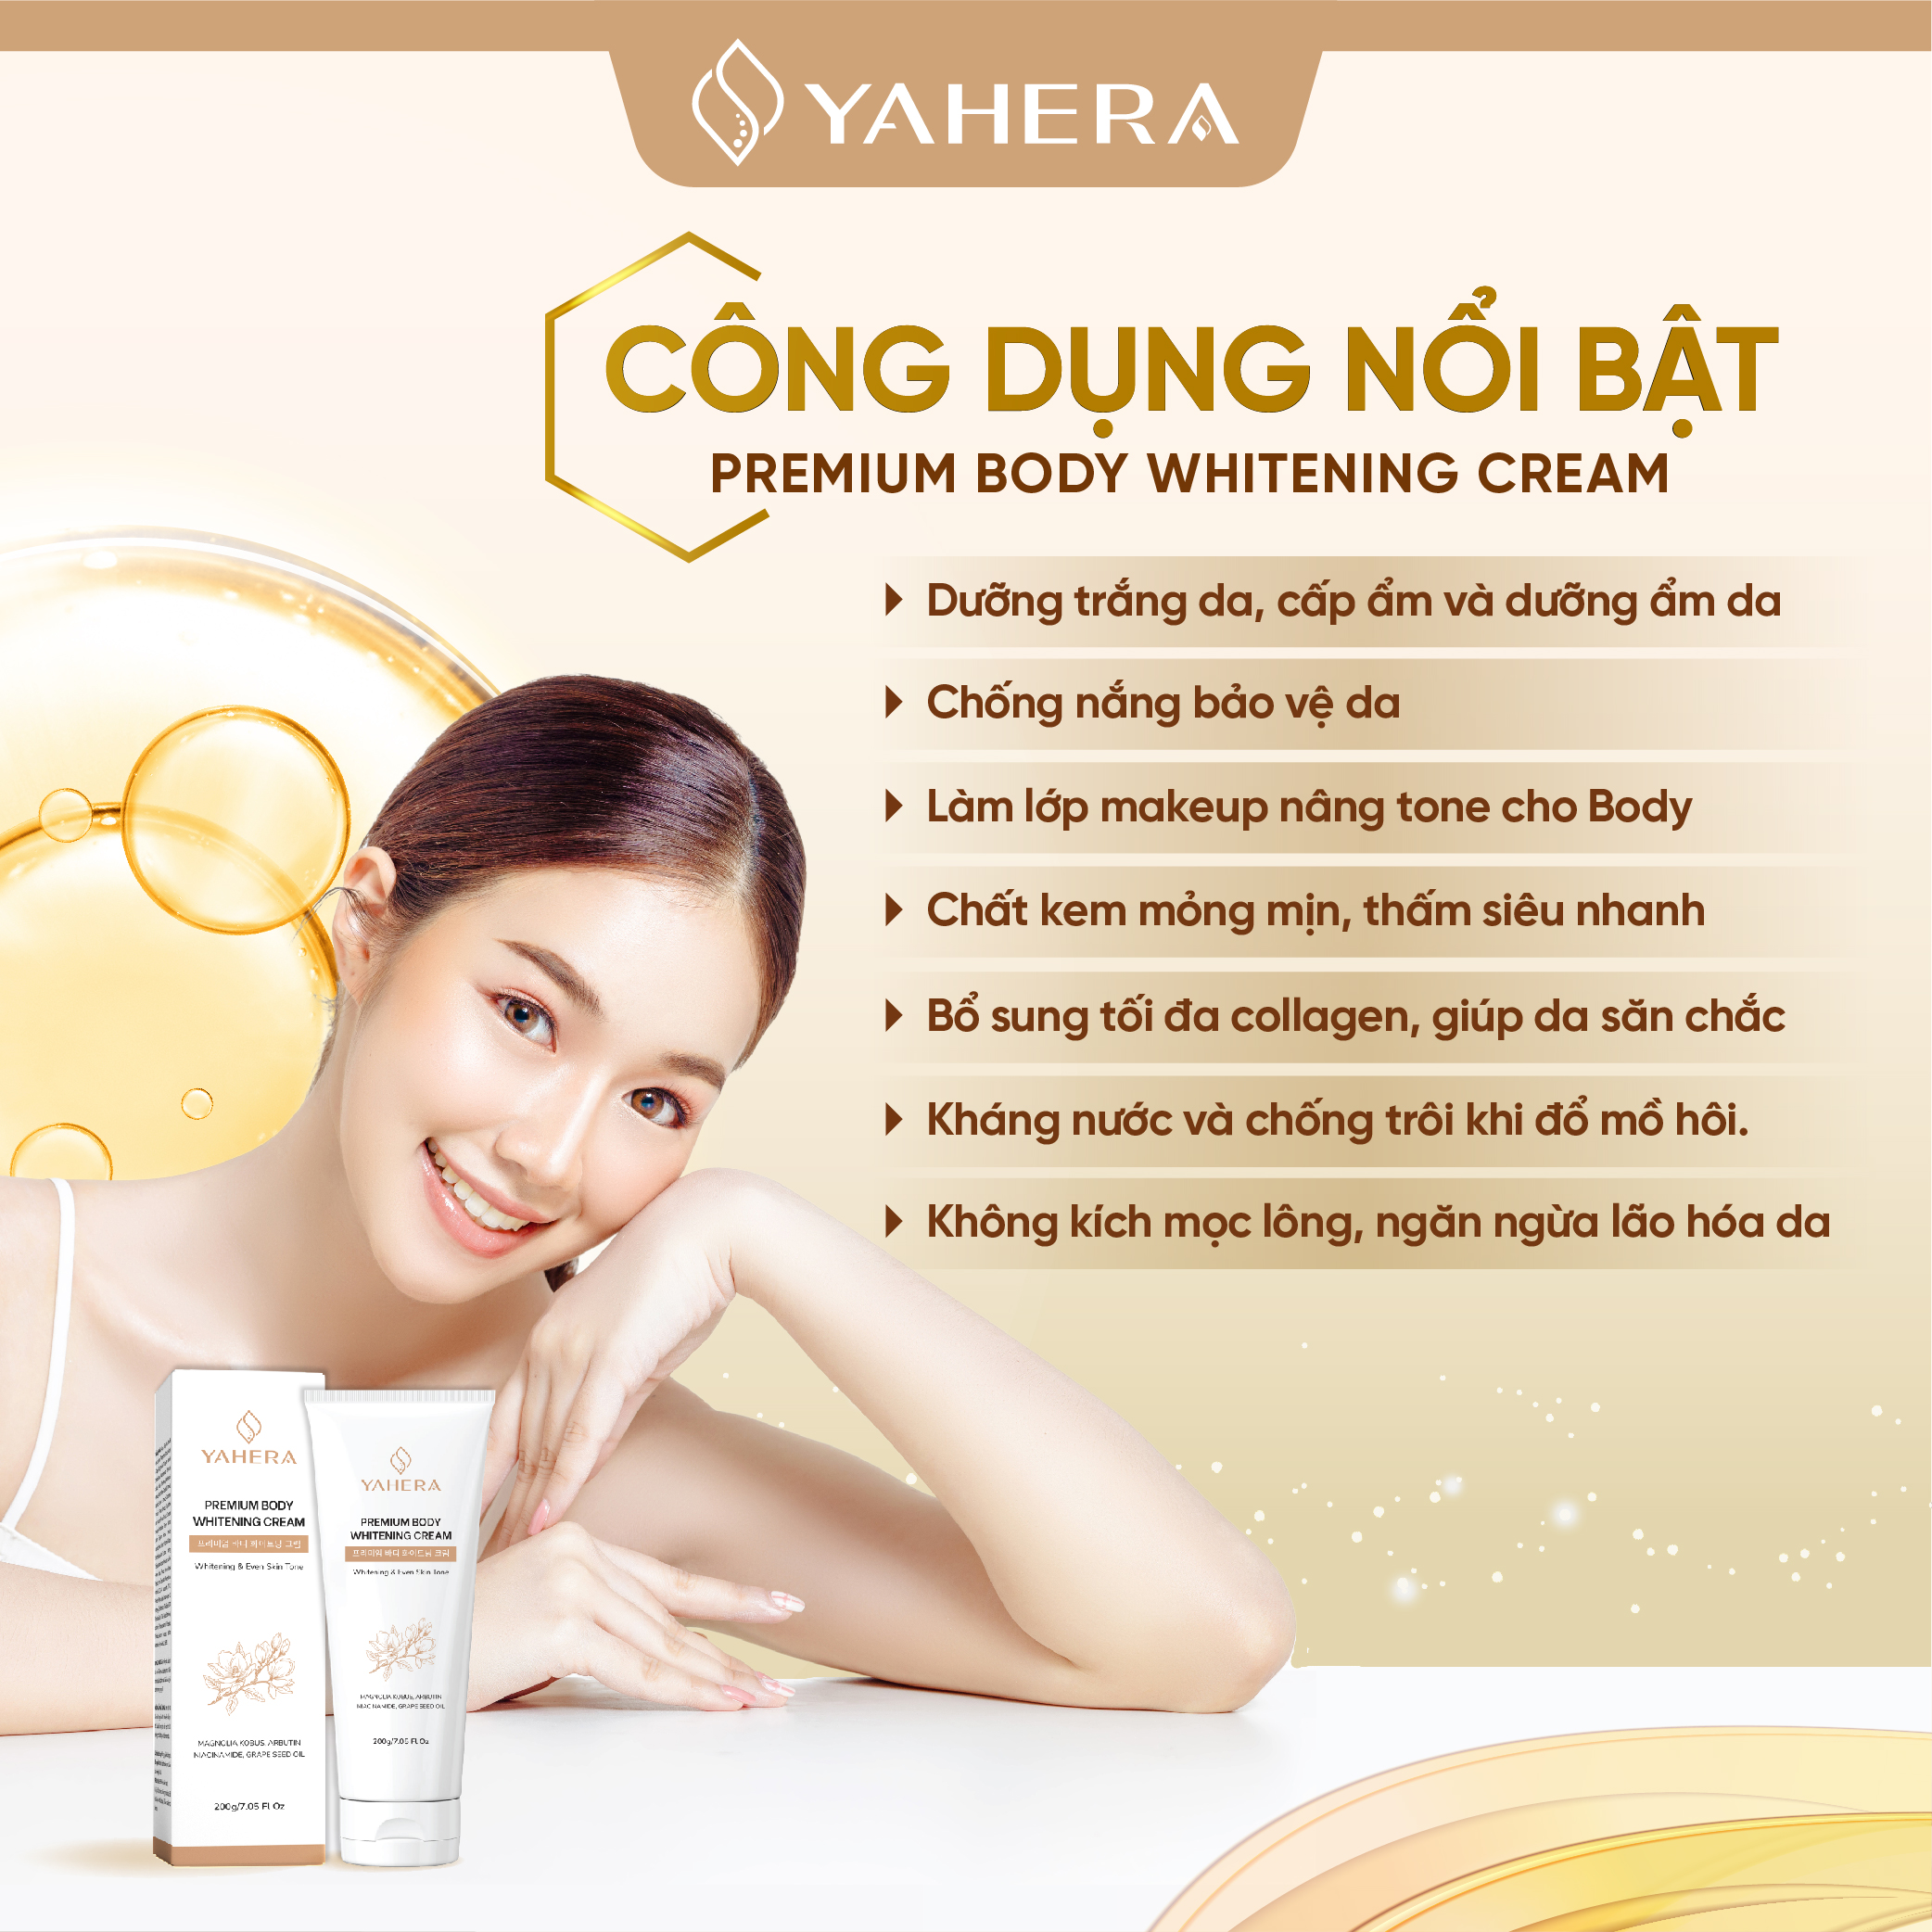 Kem dưỡng trắng da toàn thân YAHERA Premium Body Whitening Cream giúp dưỡng trắng, dưỡng ẩm, chống nắng, chống lão hóa, da mềm mịn màng hơn 200g